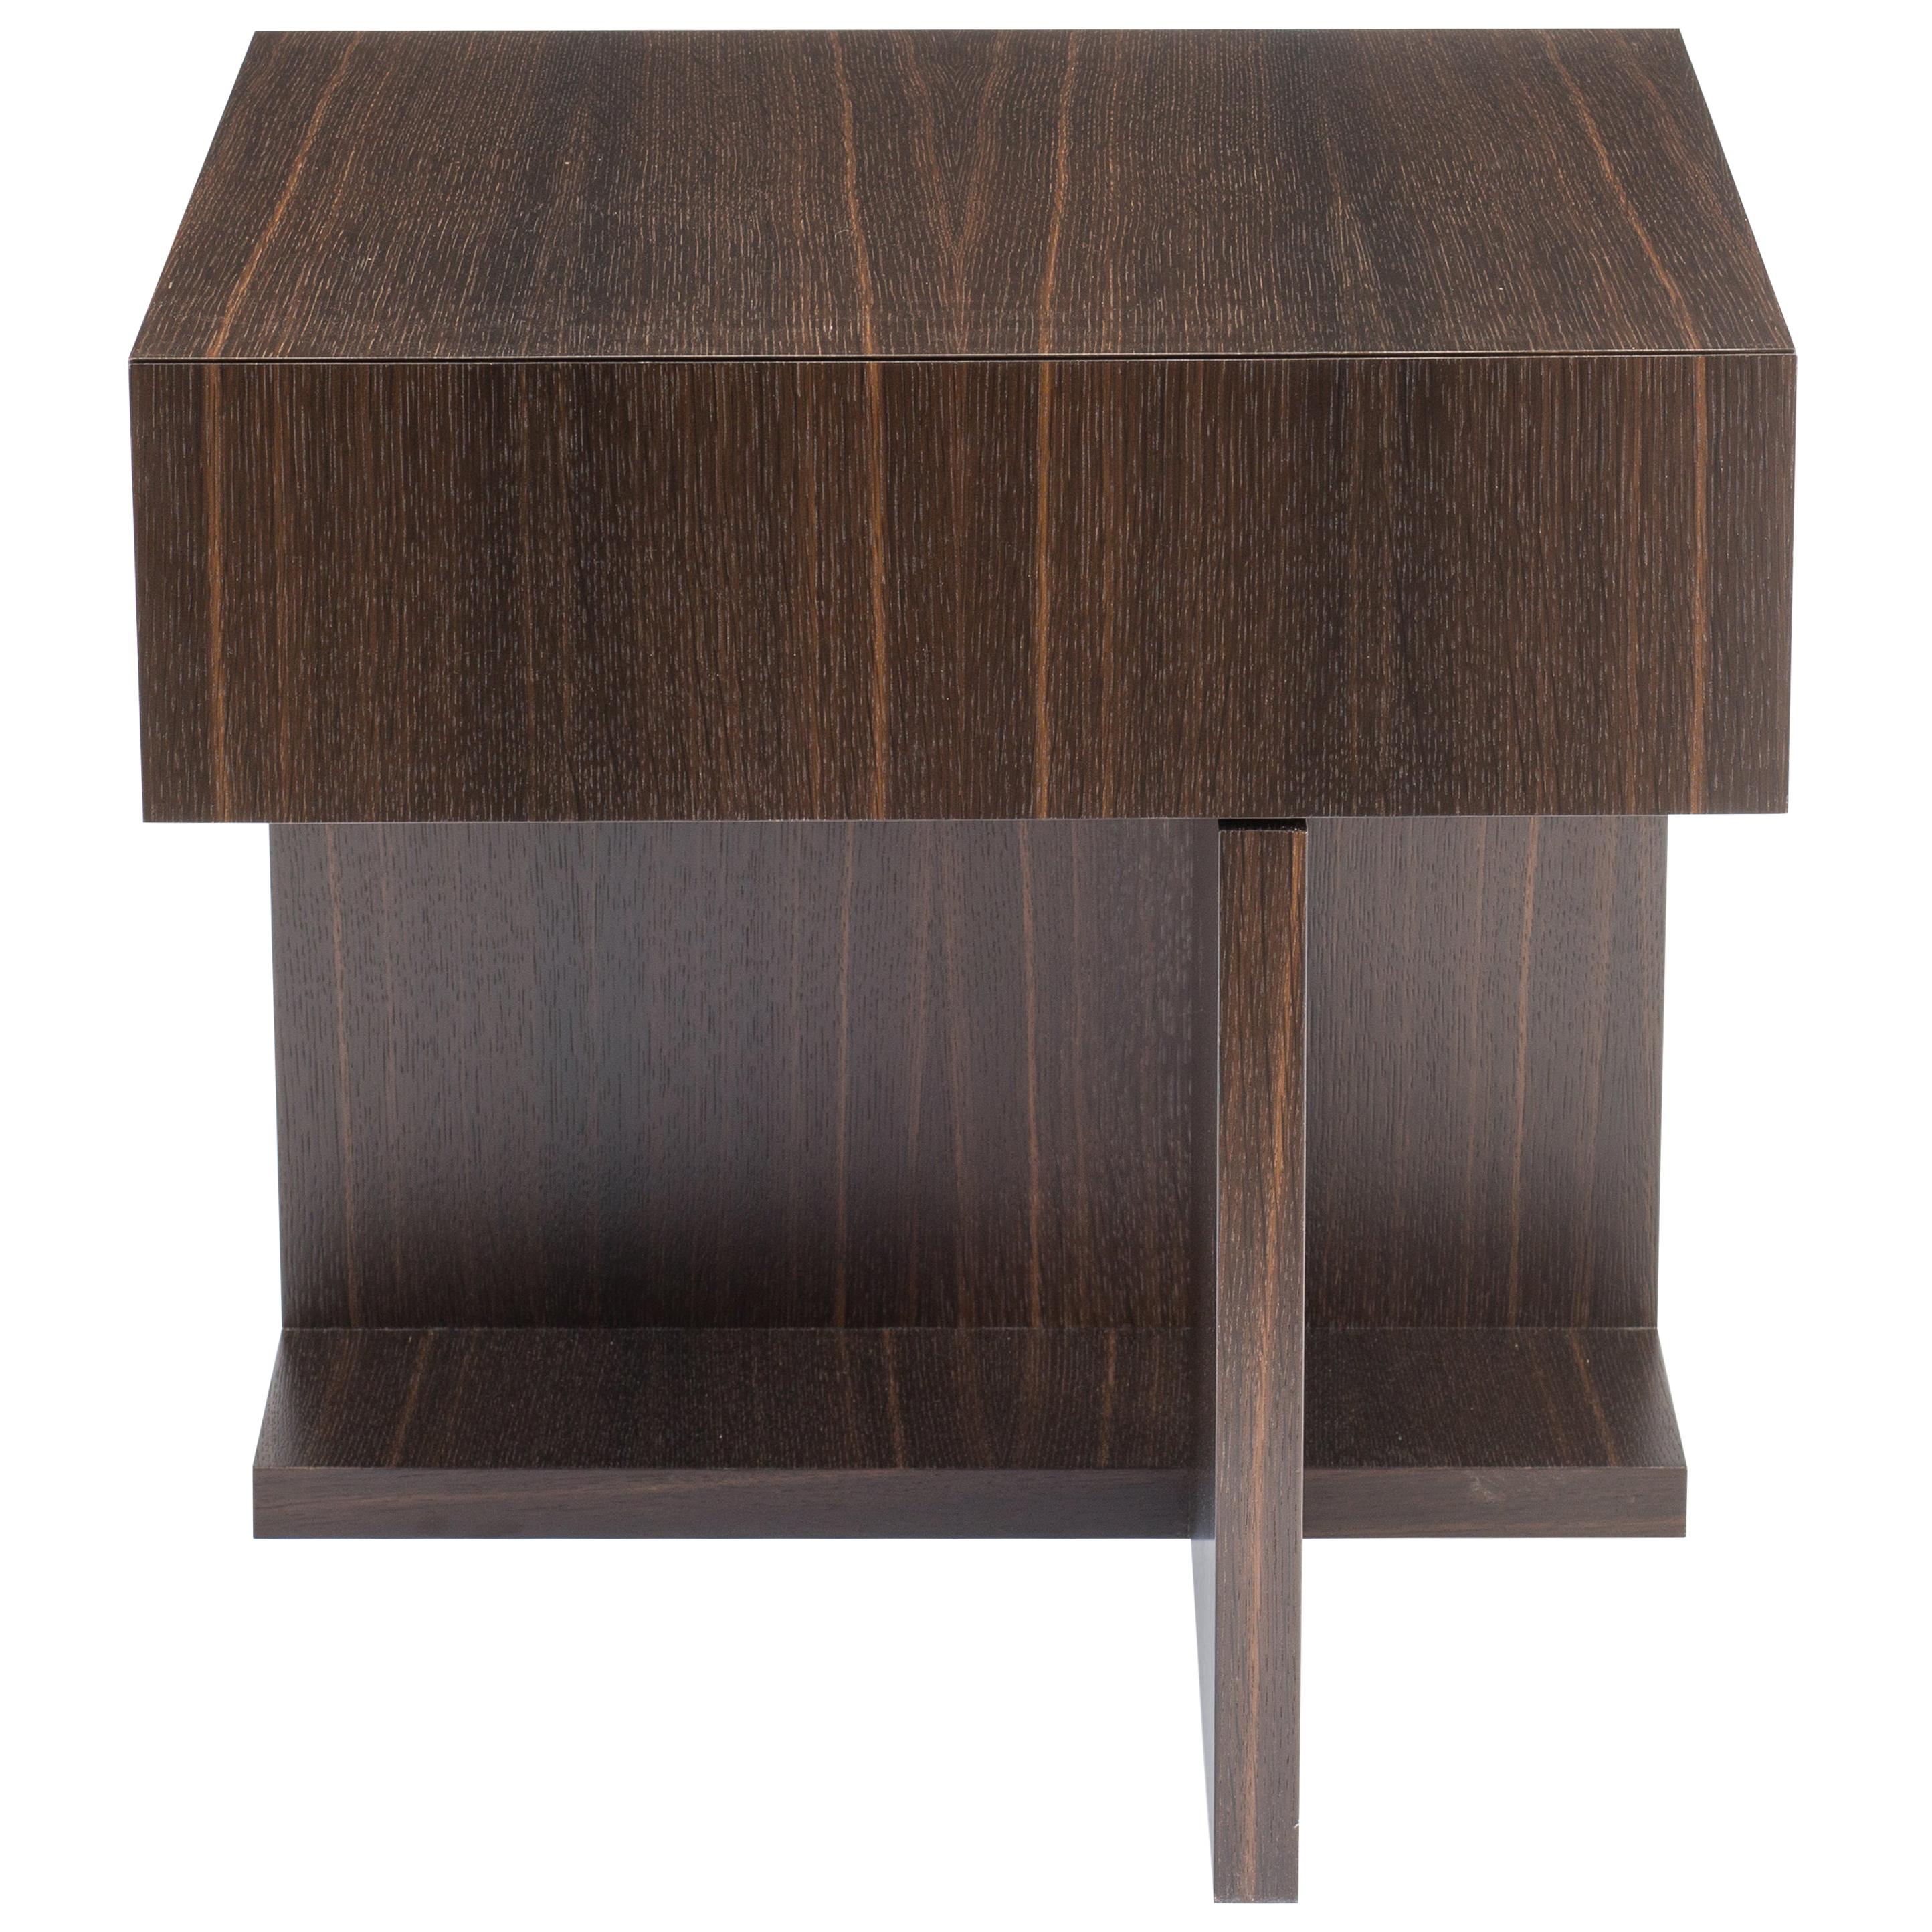 Table de nuit moderne en bois et chêne ébène fumé, par Studio DiPaolo